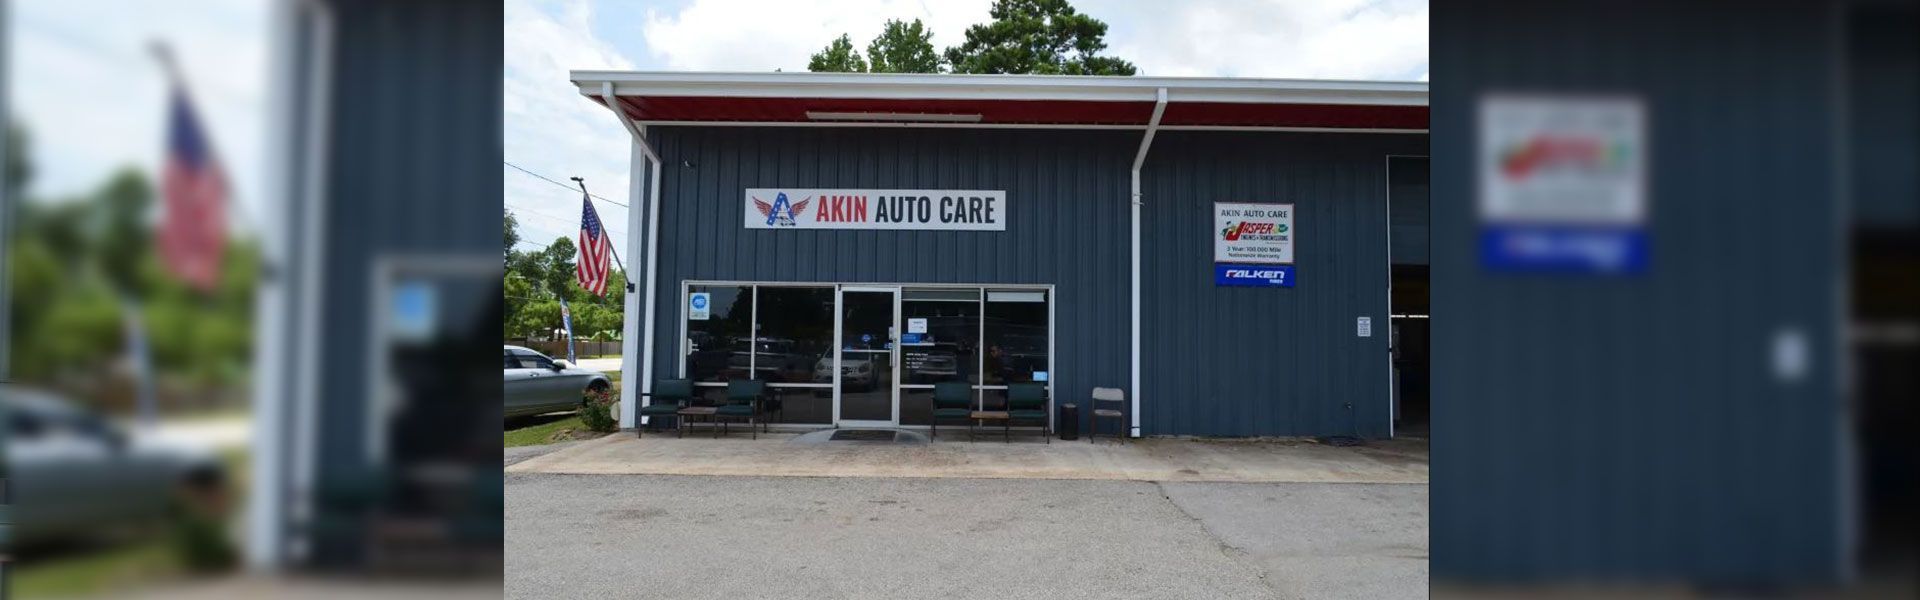 Cleveland Auto Repair | Akin Auto Care